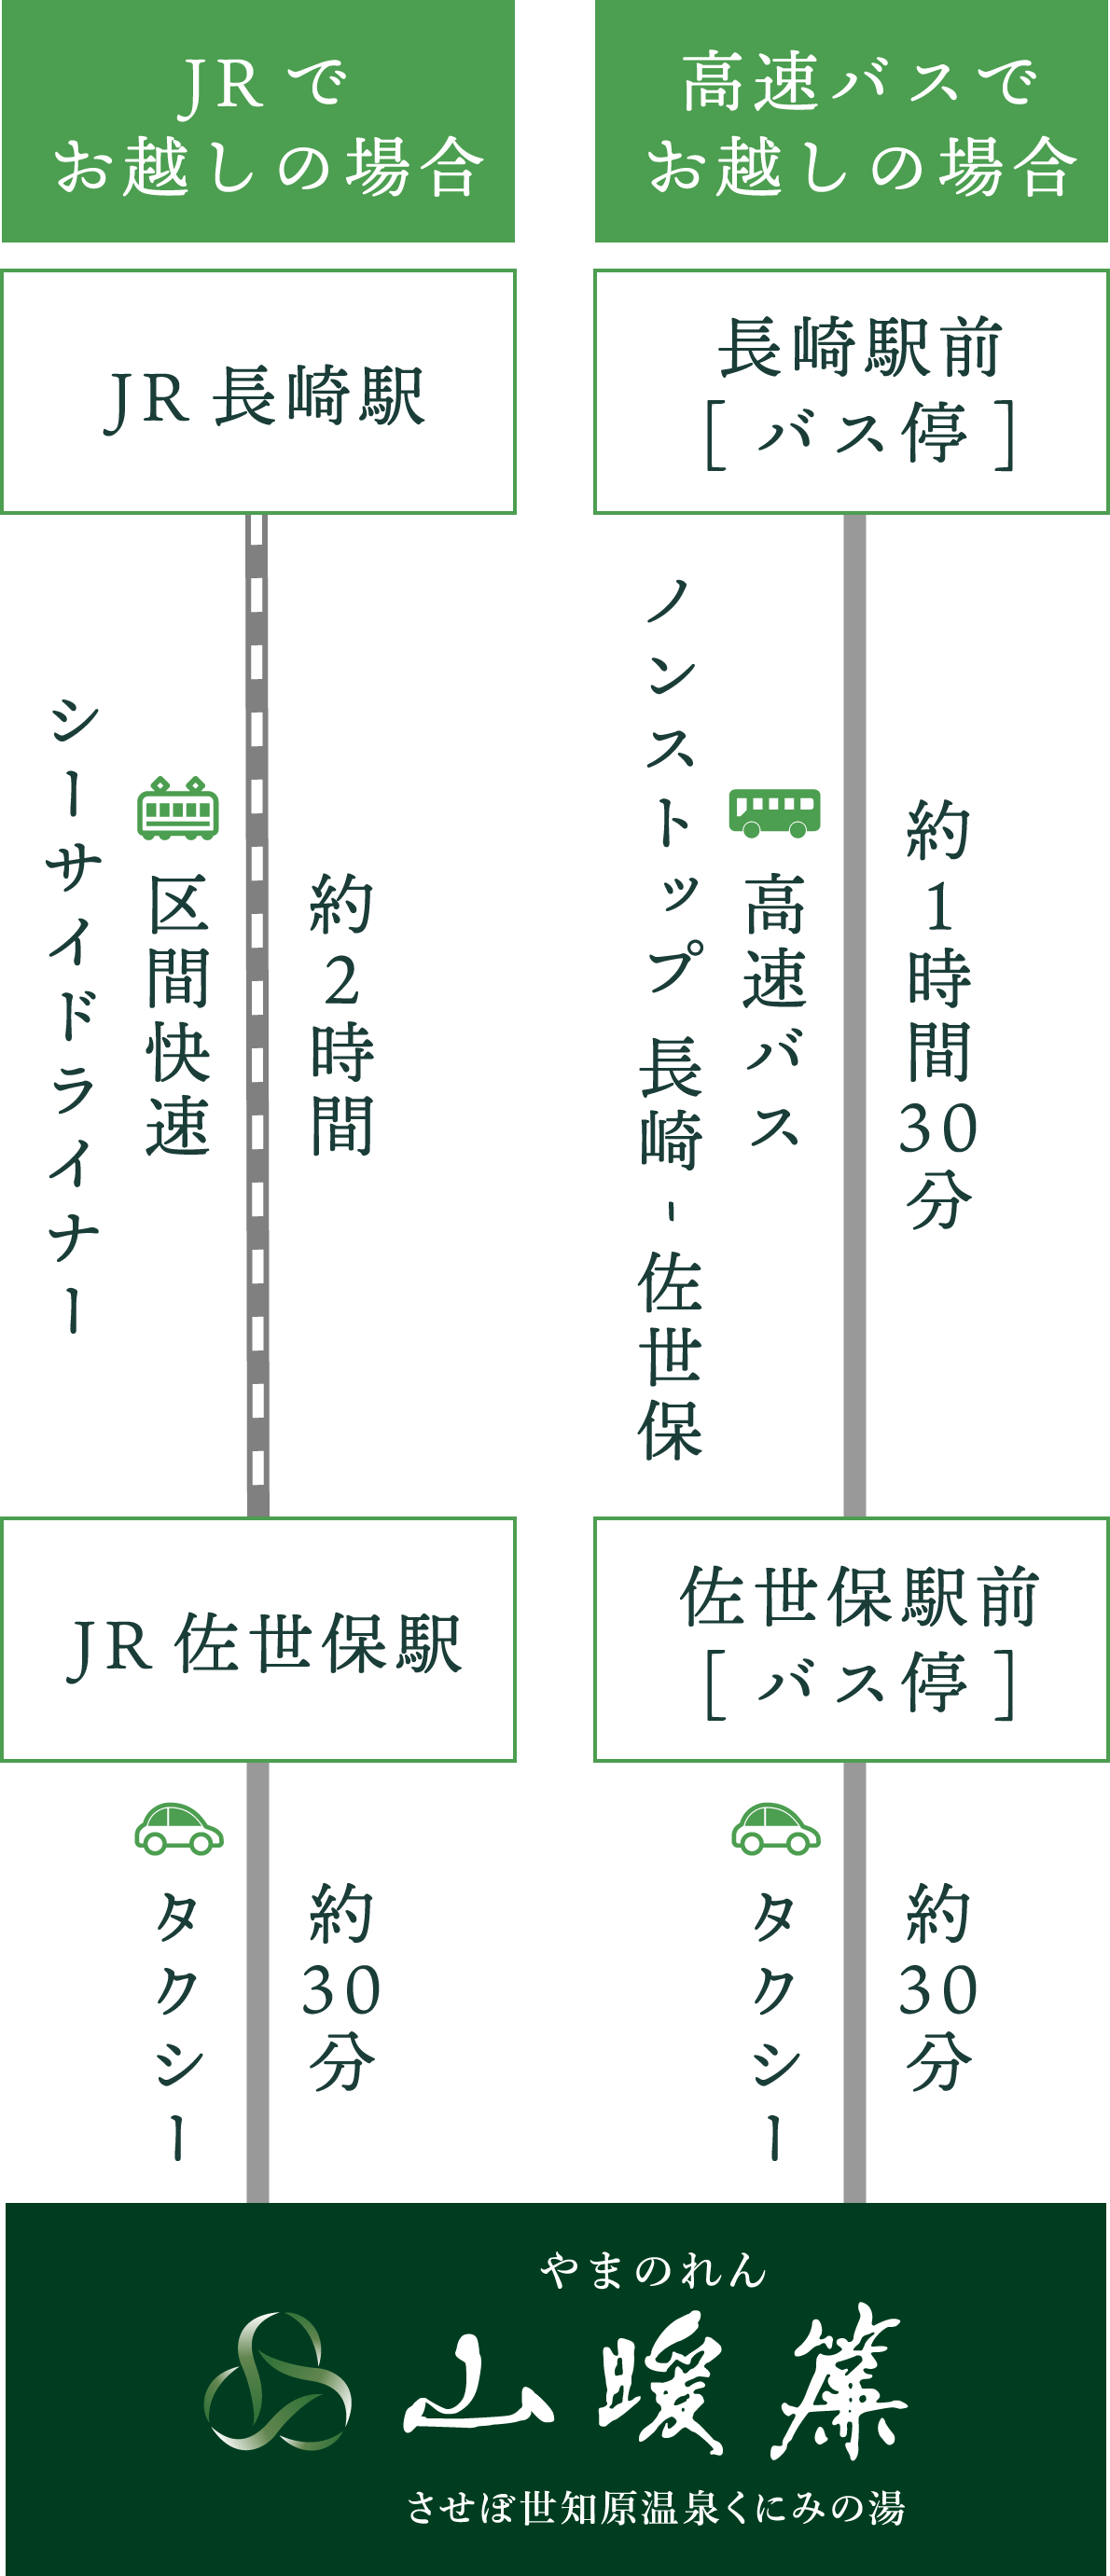 長崎方面からJR・高速バスでお越しの場合